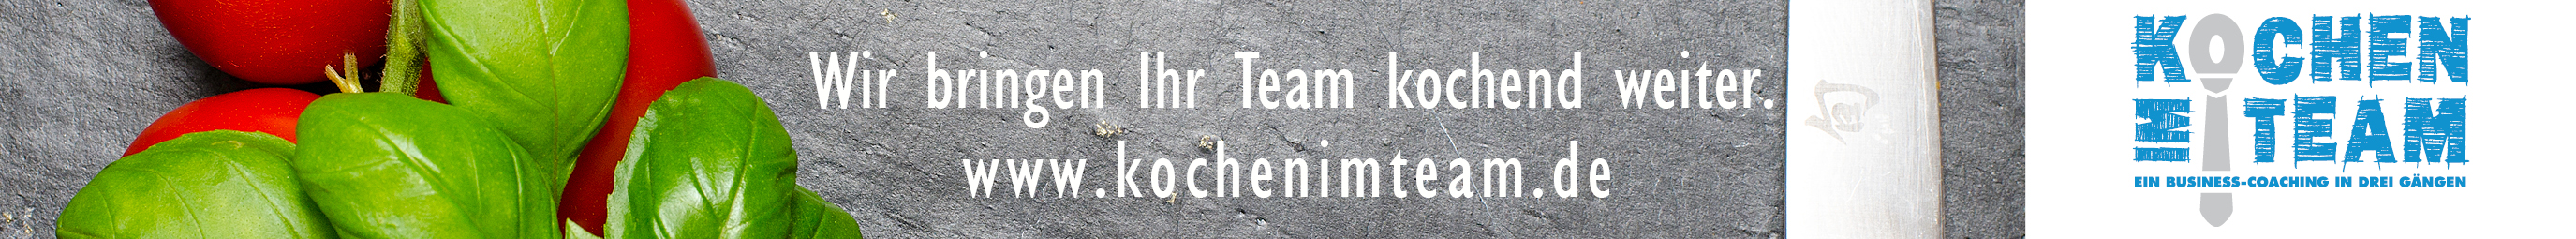 Kochen im Team, Kati Schmitt-STuhlträger, Teamentwicklung, Teambuilding